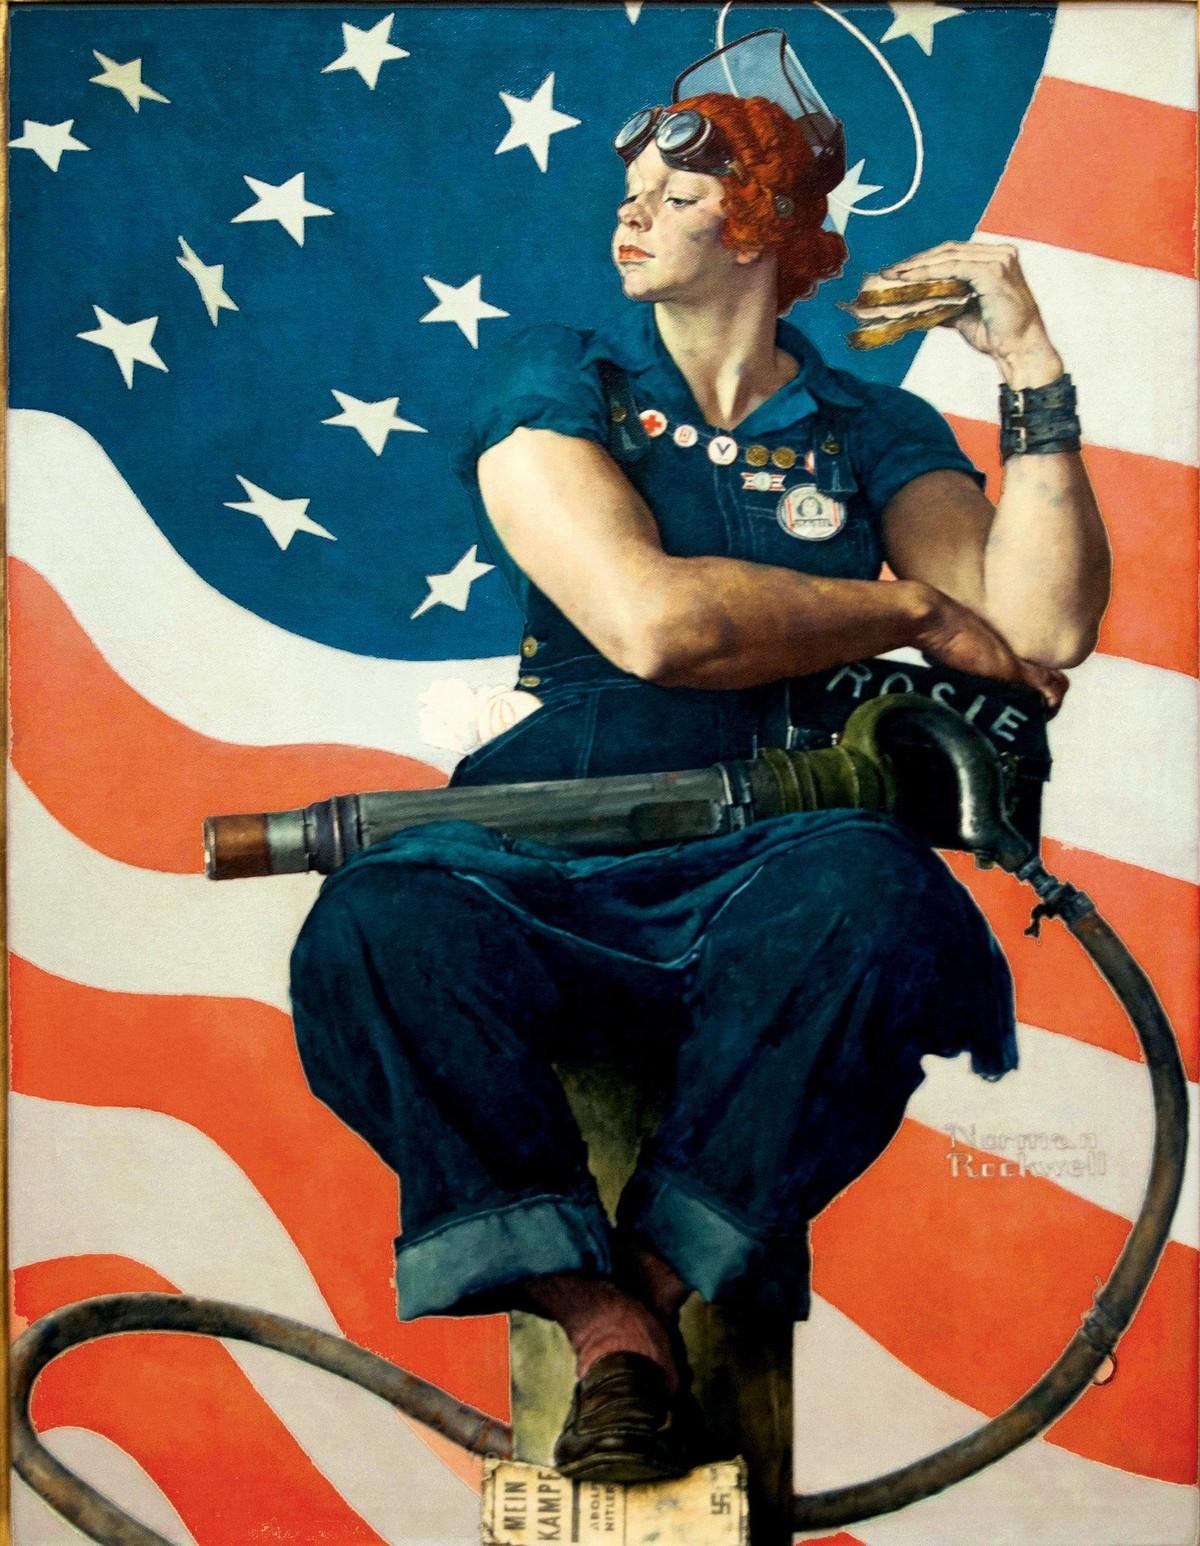 Un poster de Norman Rockwell, “Rosie the Riveter”